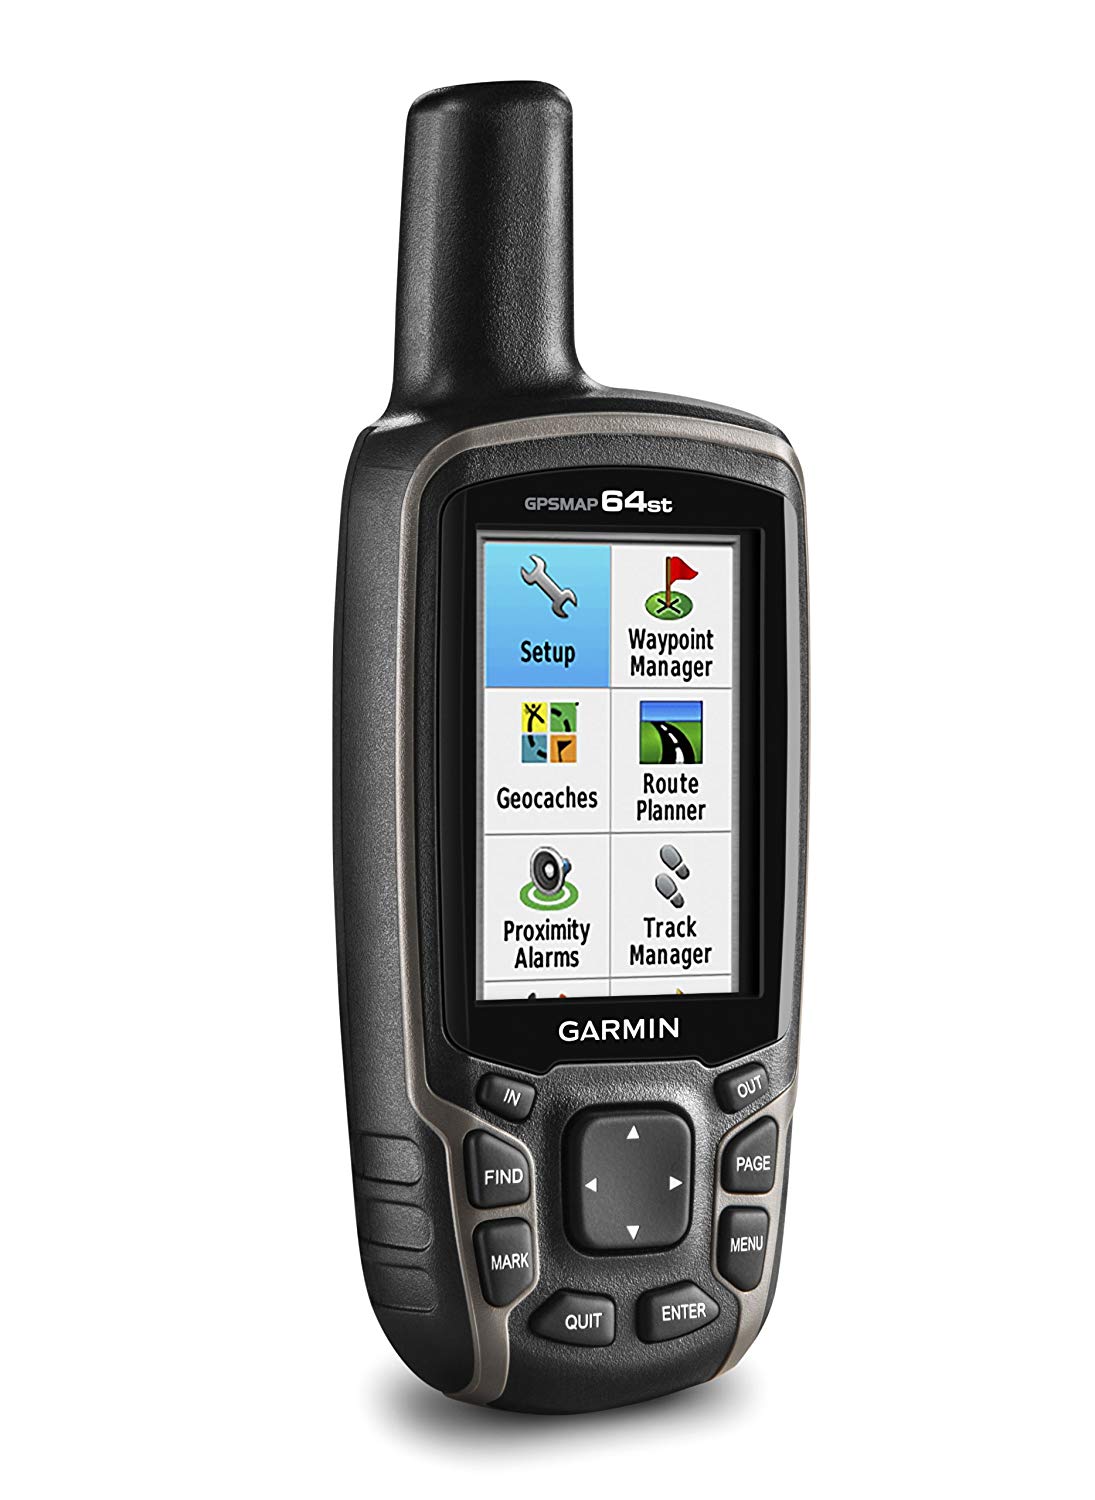 Garmin GPSMAP 64st, TOPO US 100K con GPS de alta sensibilidad y receptor